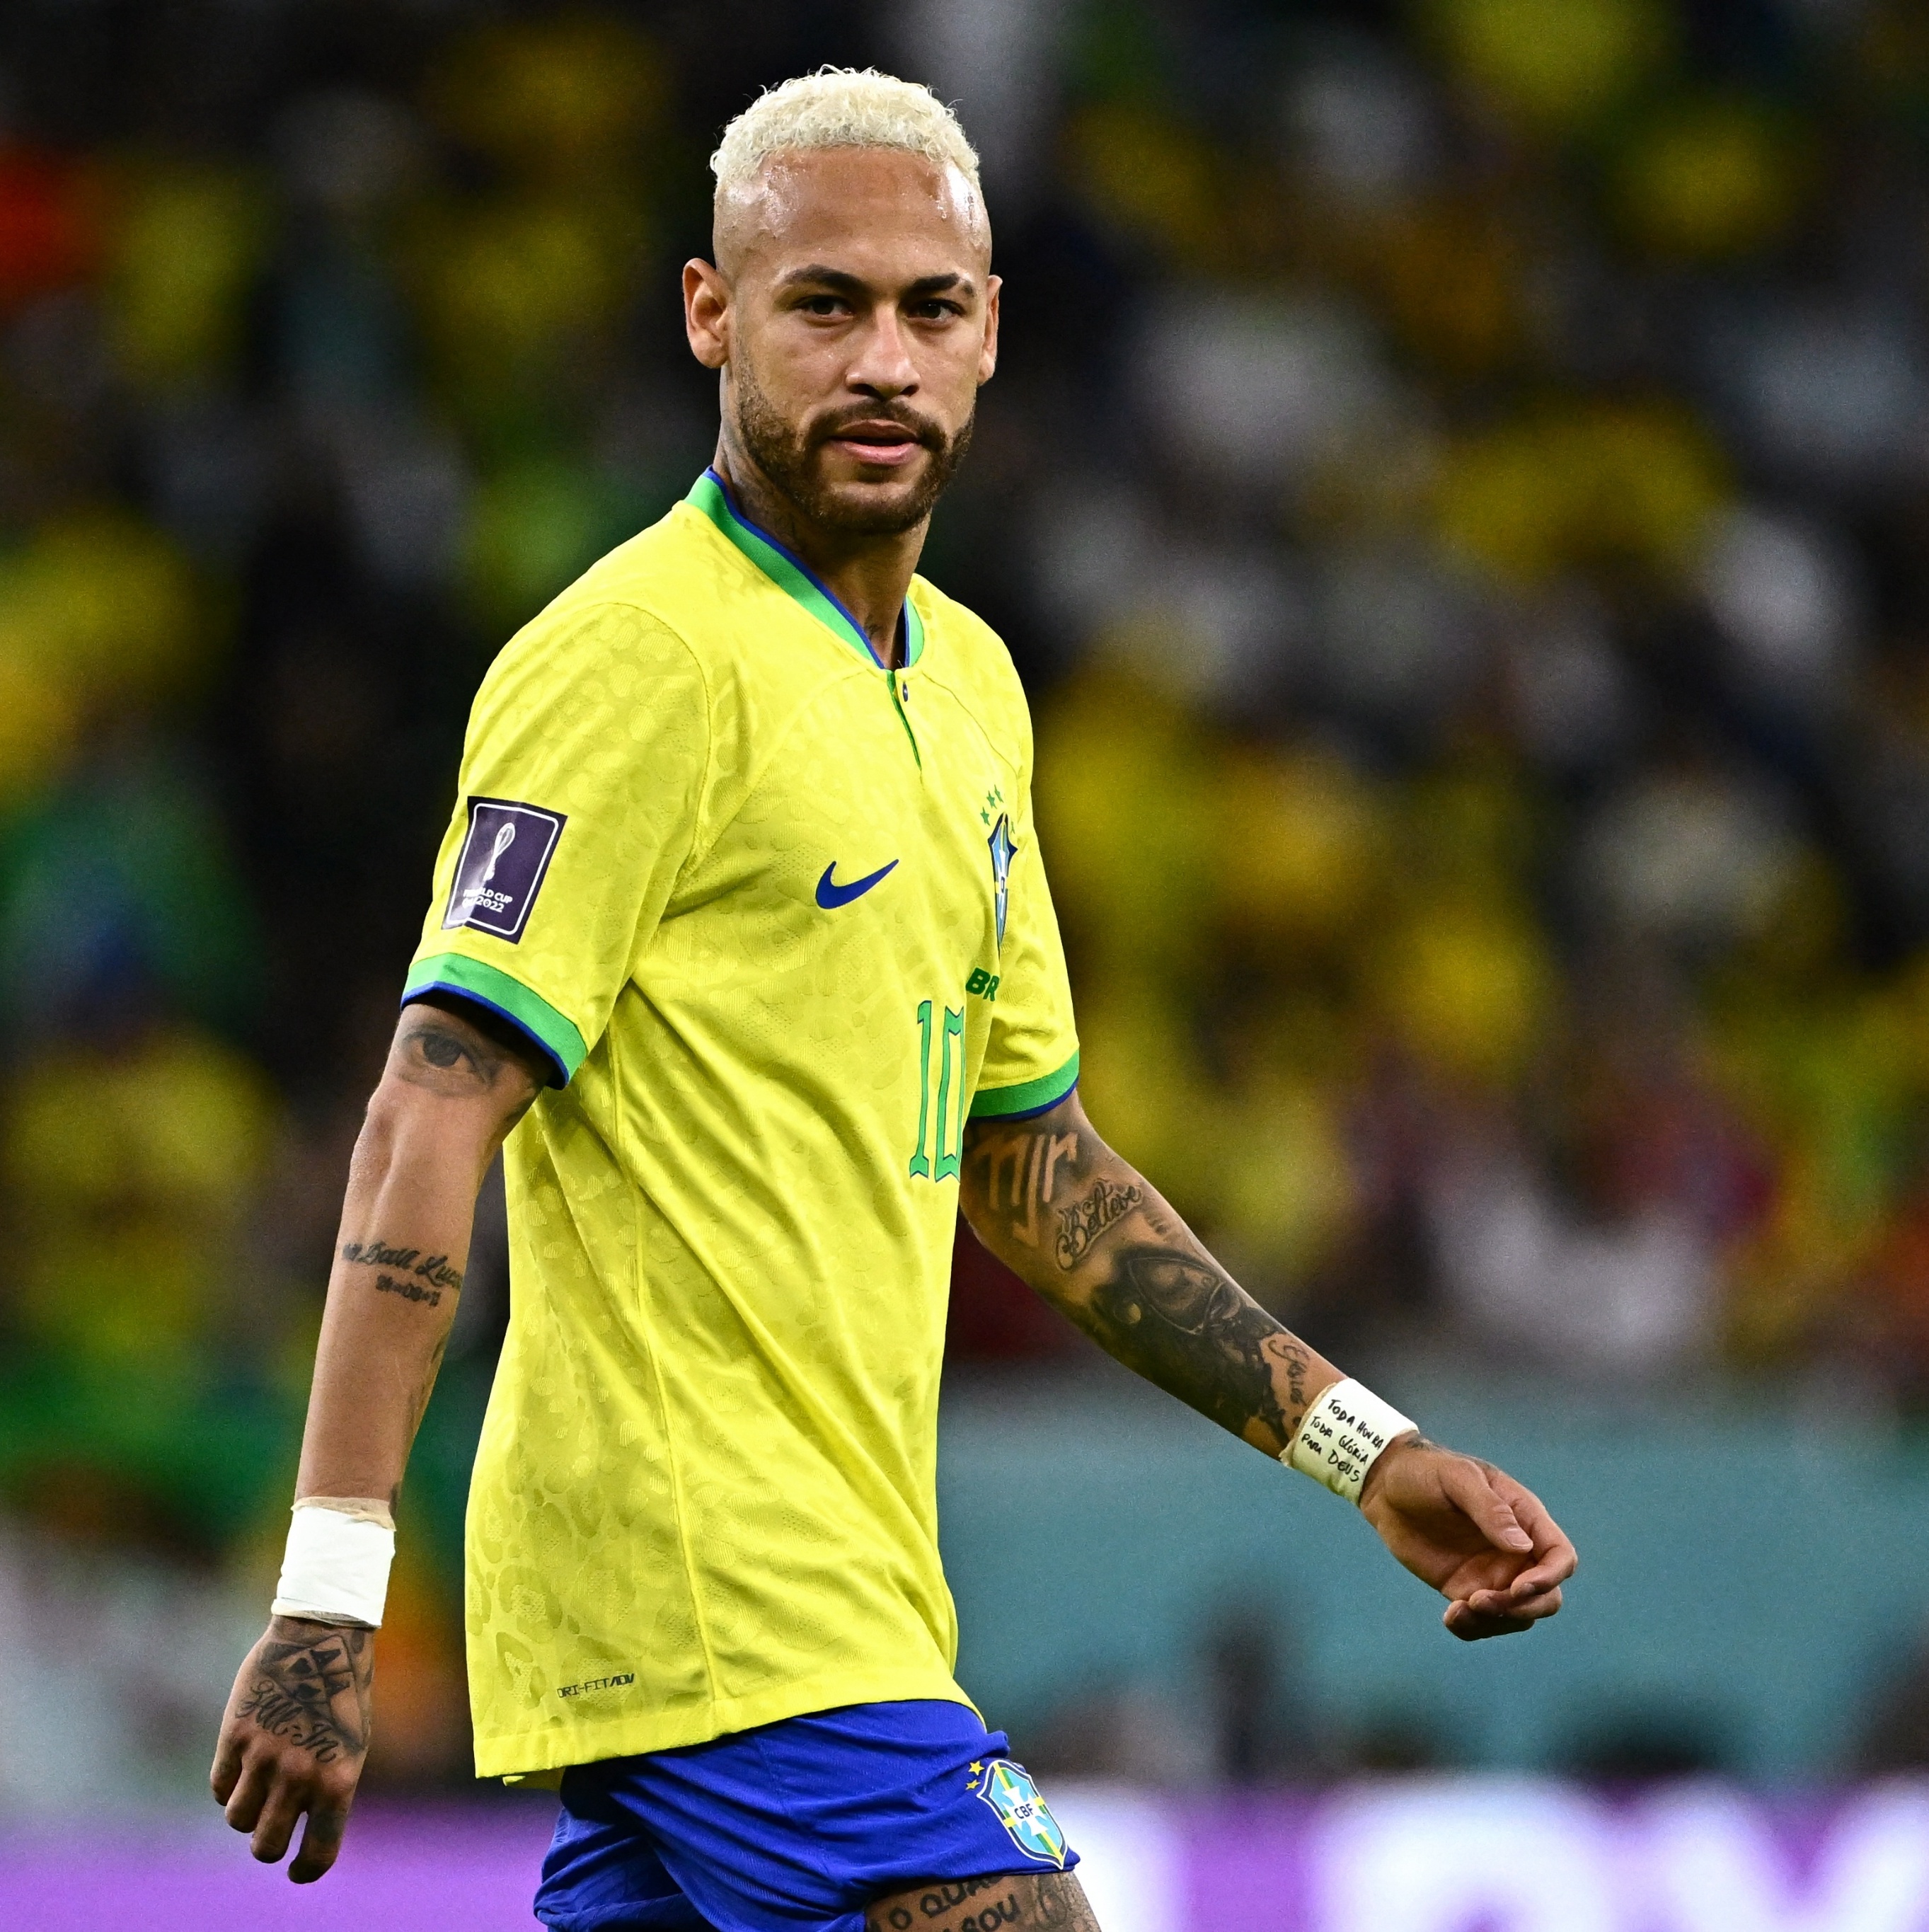 Neymar diz que conquistar a Copa do Mundo é principal objetivo na carreira:  Farei o possível, futebol internacional